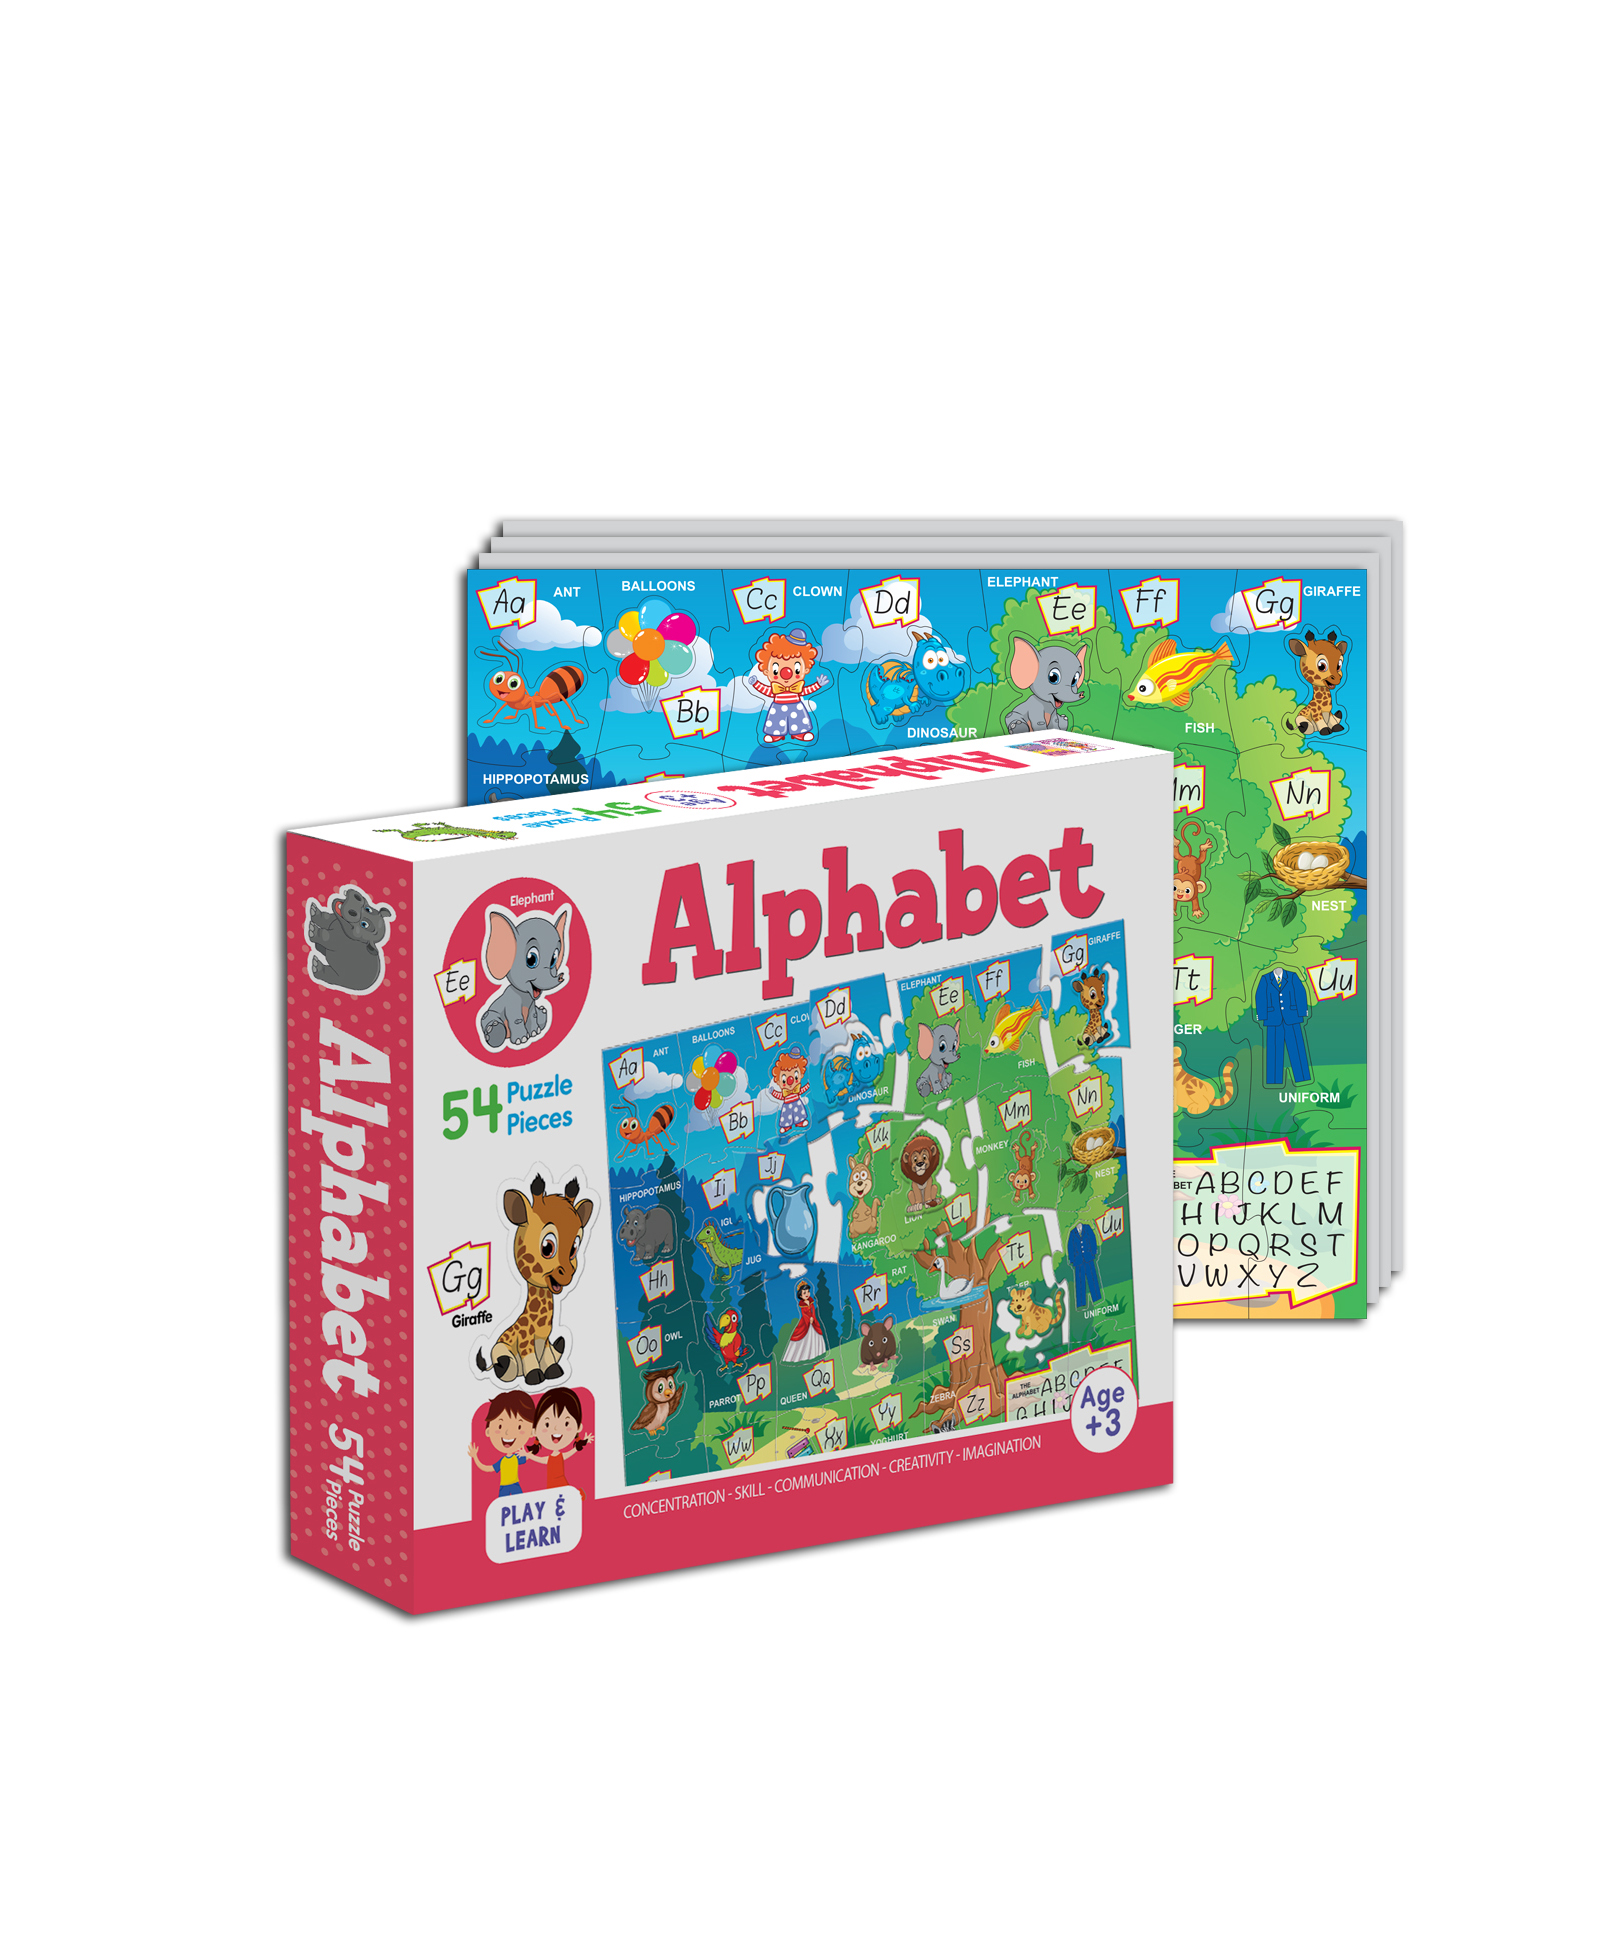 Alphabet Puzzle Pcs Box